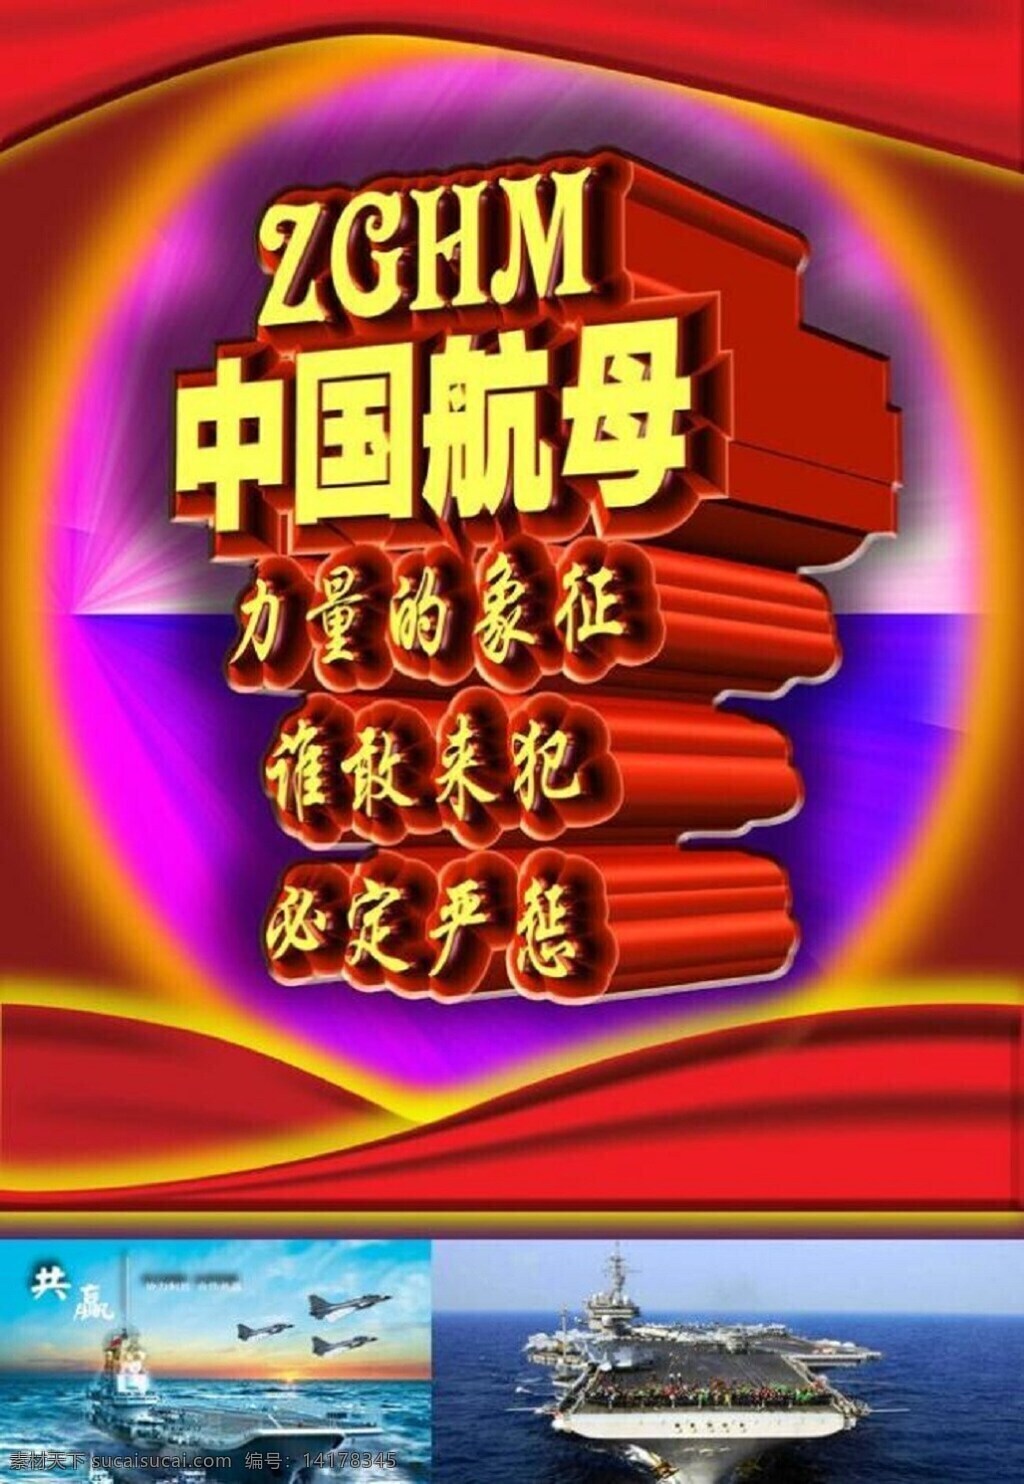 中国 航母 力量 象征 模板下载 中国航母 力量的象征中 国 红色